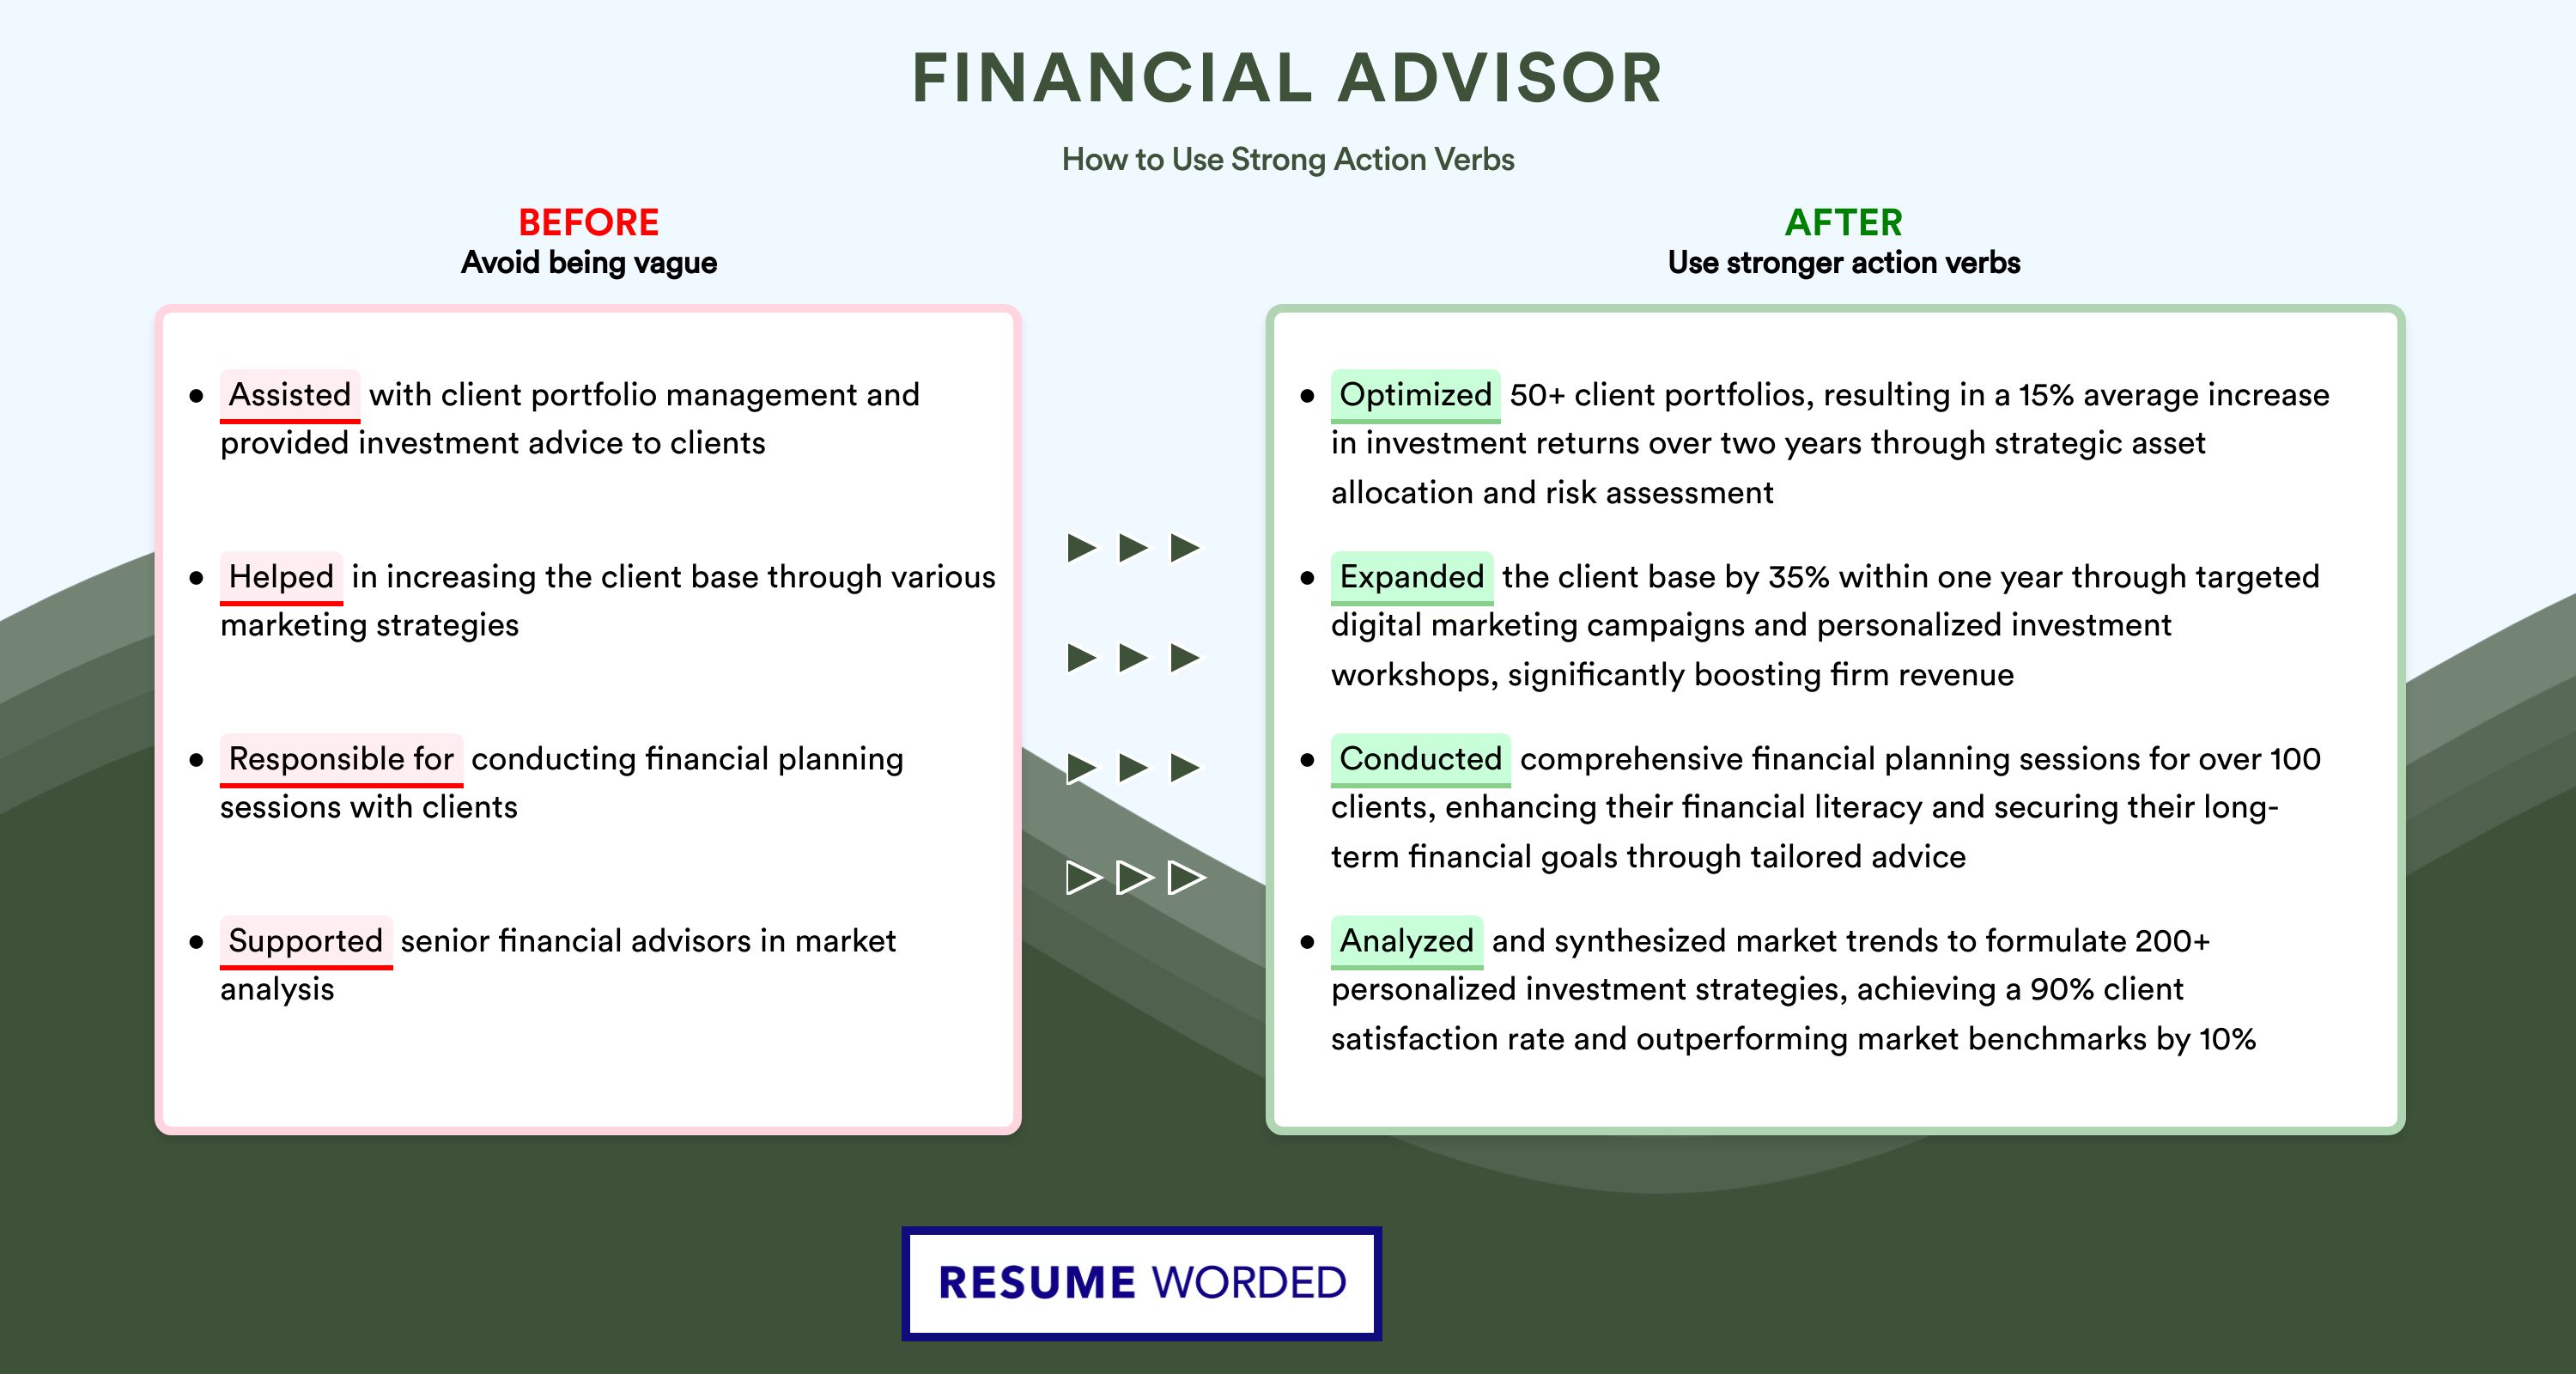 Action Verbs for Financial Advisor